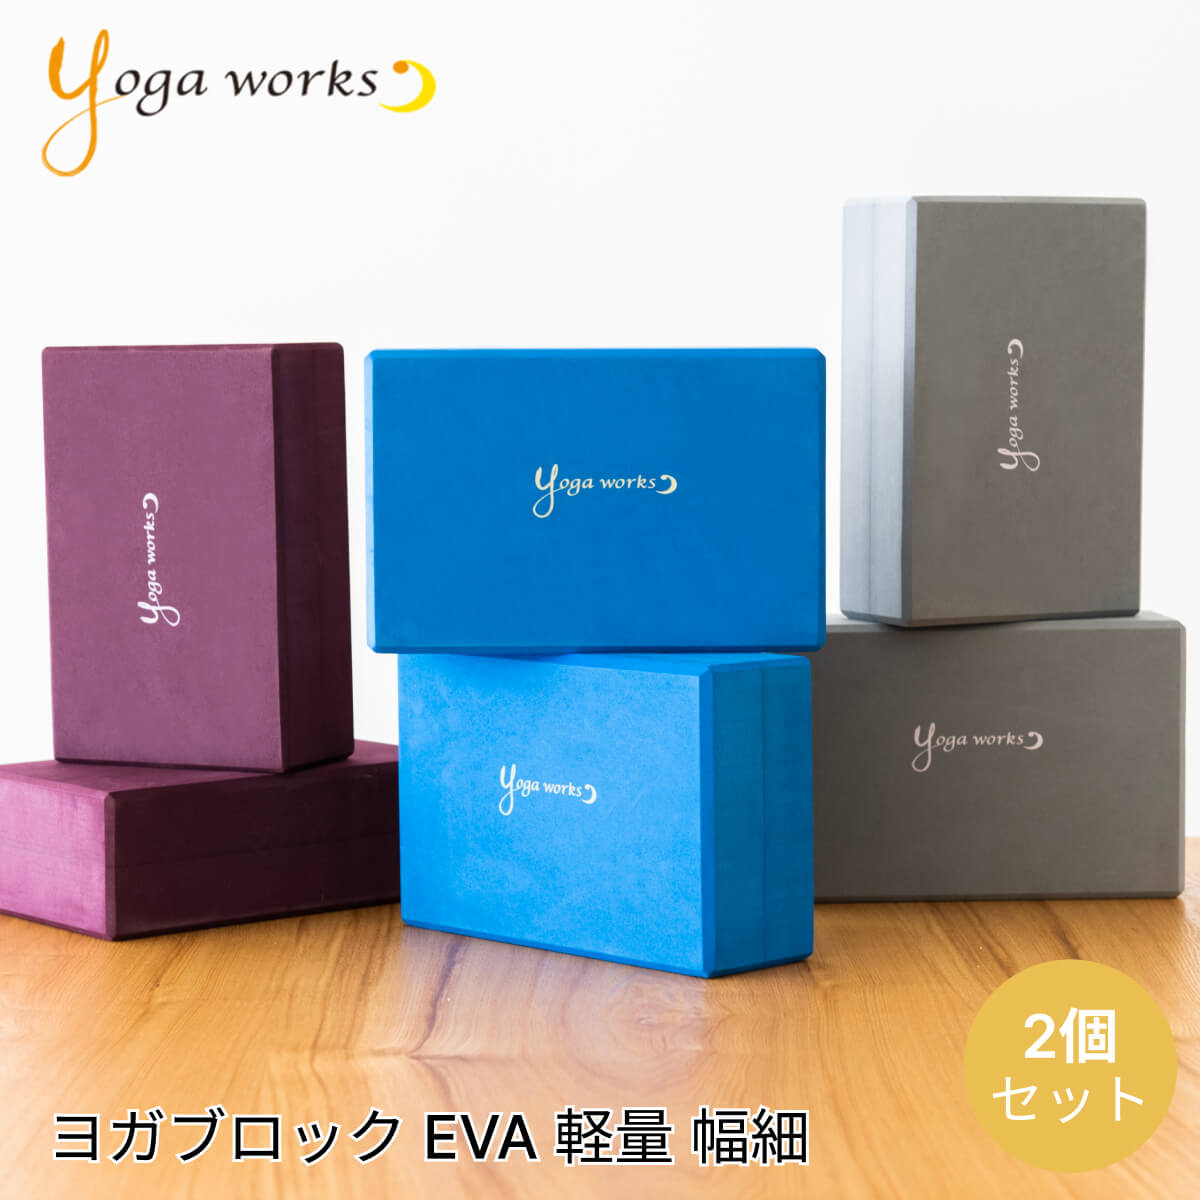 ヨガワークス ヨガグッズ Yogaworks ヨガブロックA 2個セット 日本正規品 YOGABLOCK A 20SS ヨガブロック 軽量 補助 サポート プロップス トレーニング YW-E411/YW11152 ヨガ枕 持ち運び 安定 …